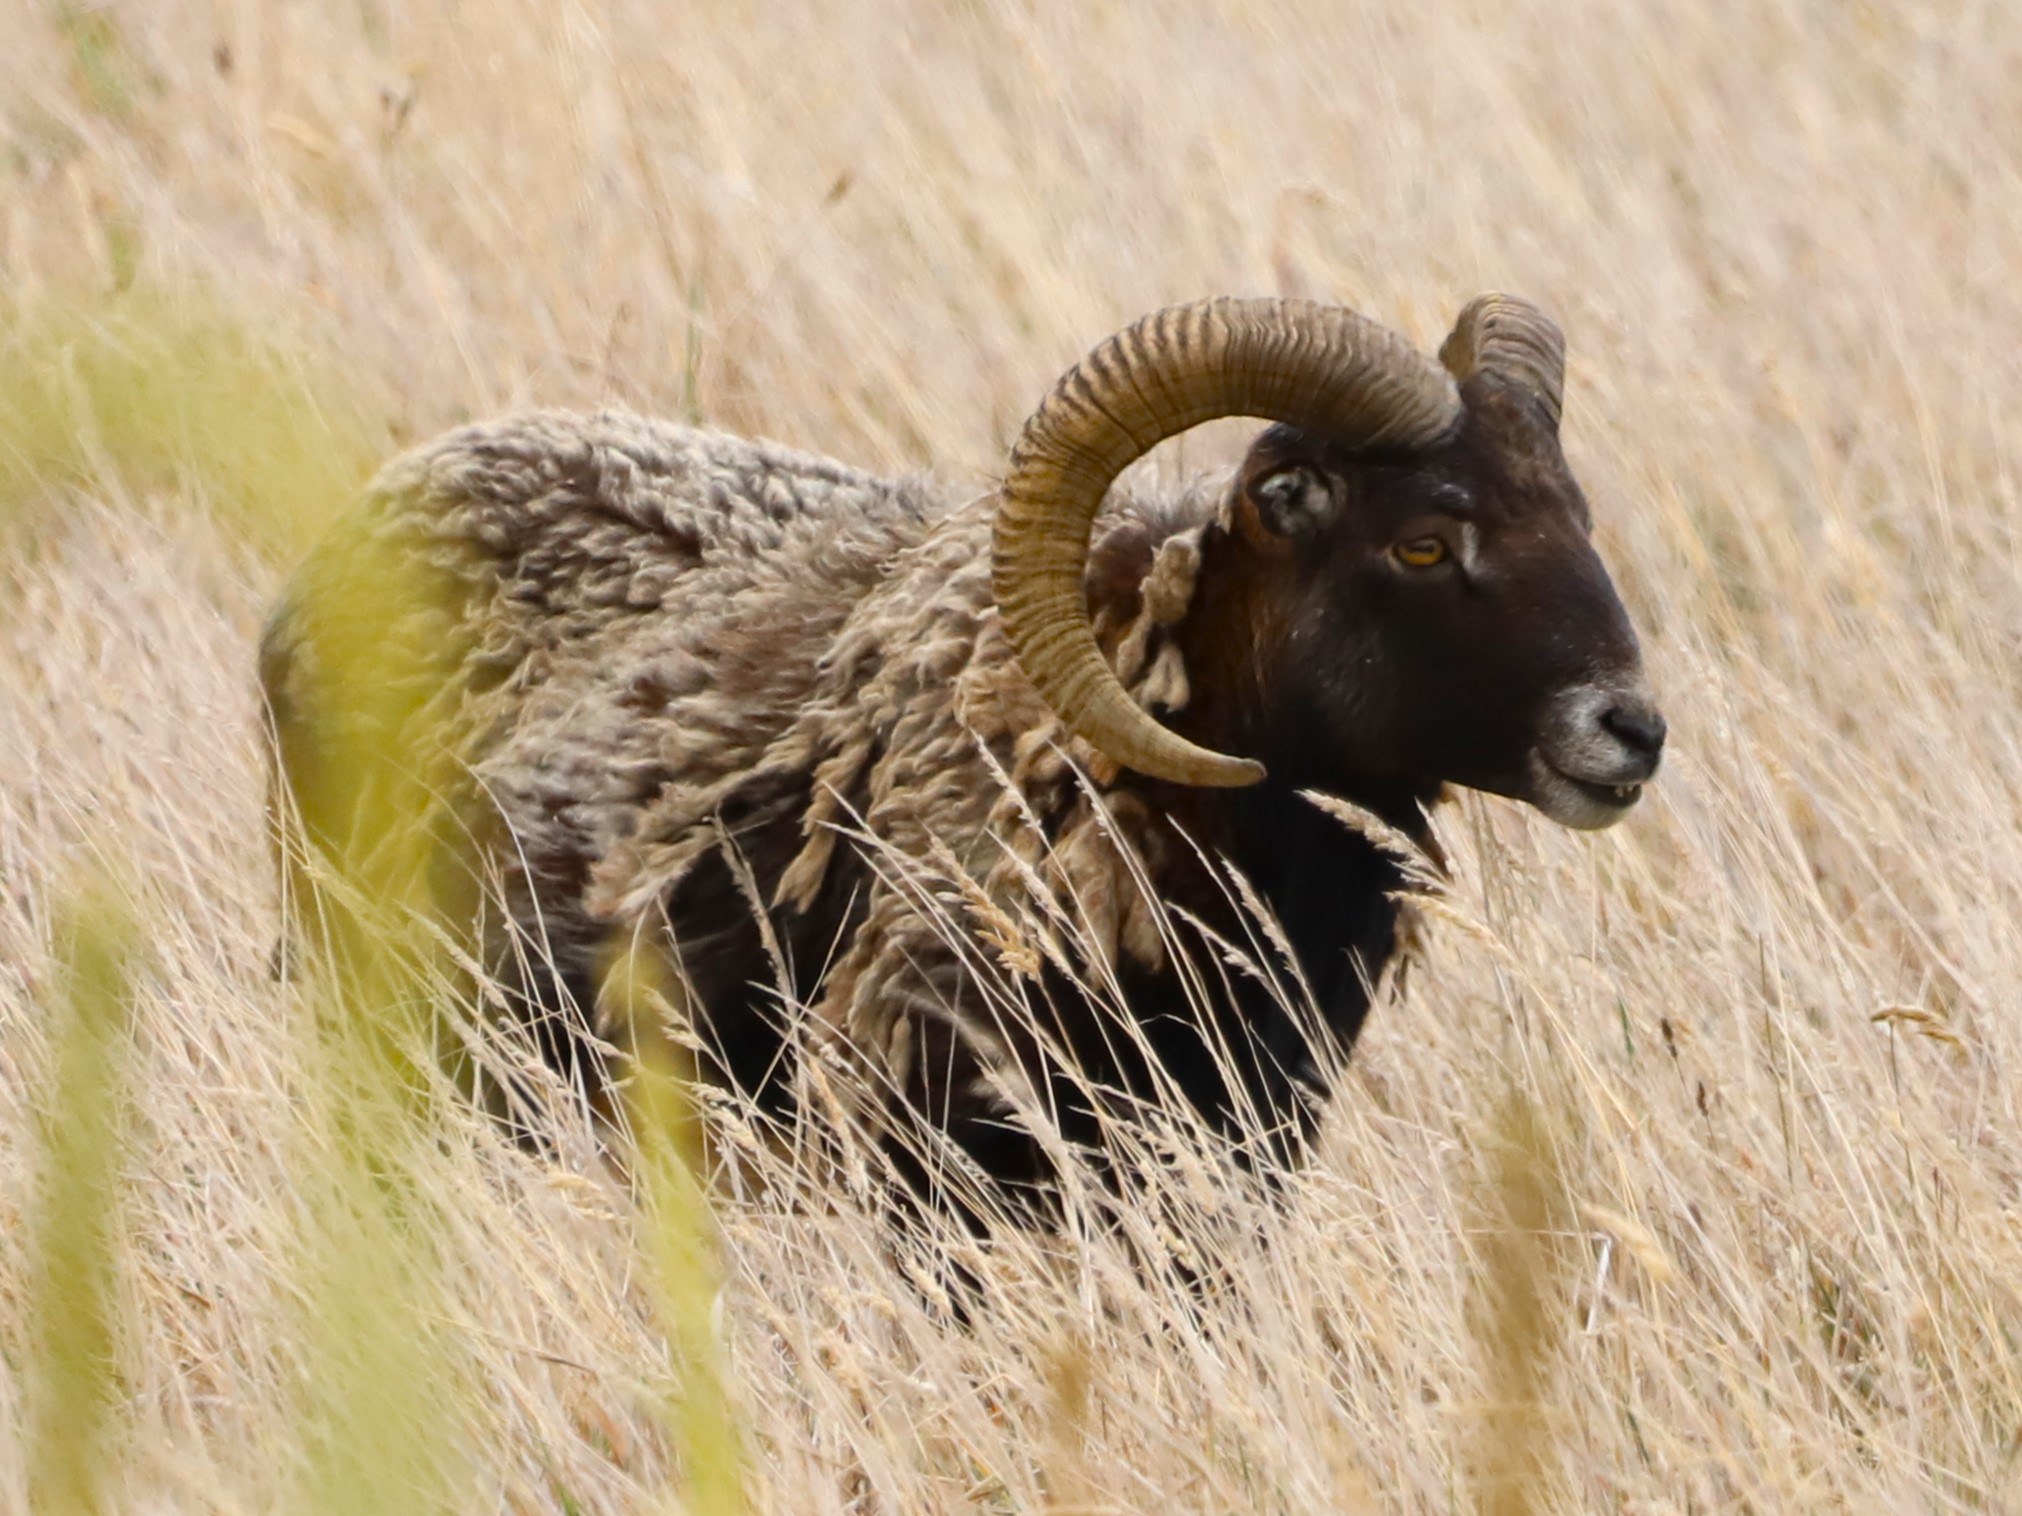 A mouflon sheep